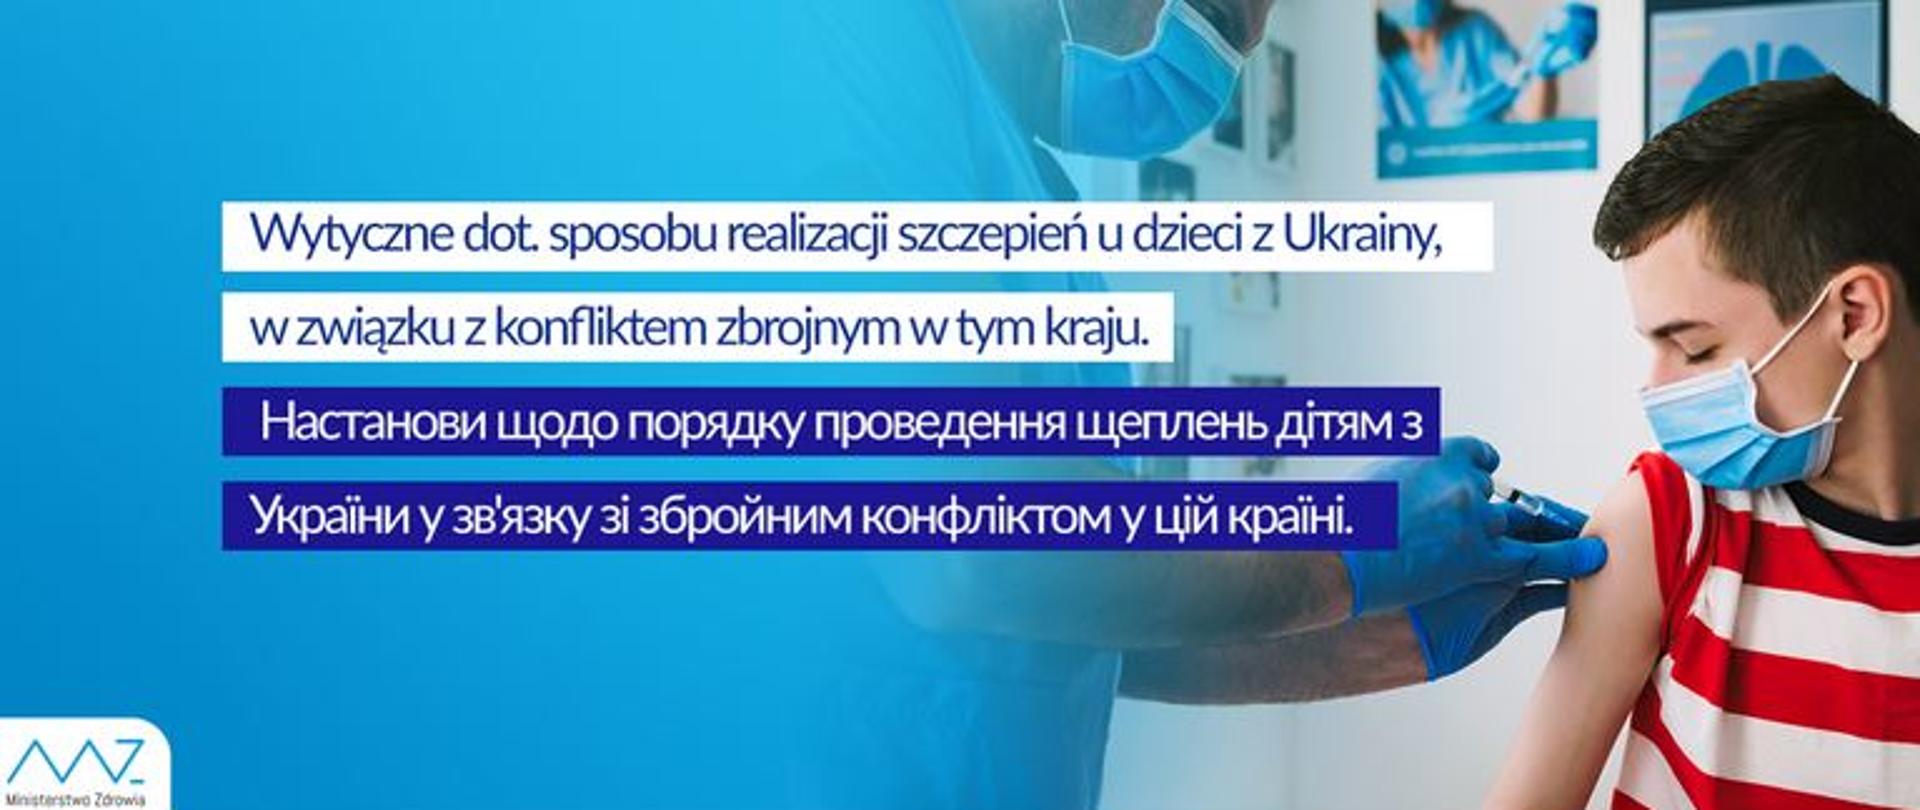 Wytyczne dotyczące sposobu realizacji szczepień u dzieci z Ukrainy w związku z konfliktem zbrojnym w tym kraju